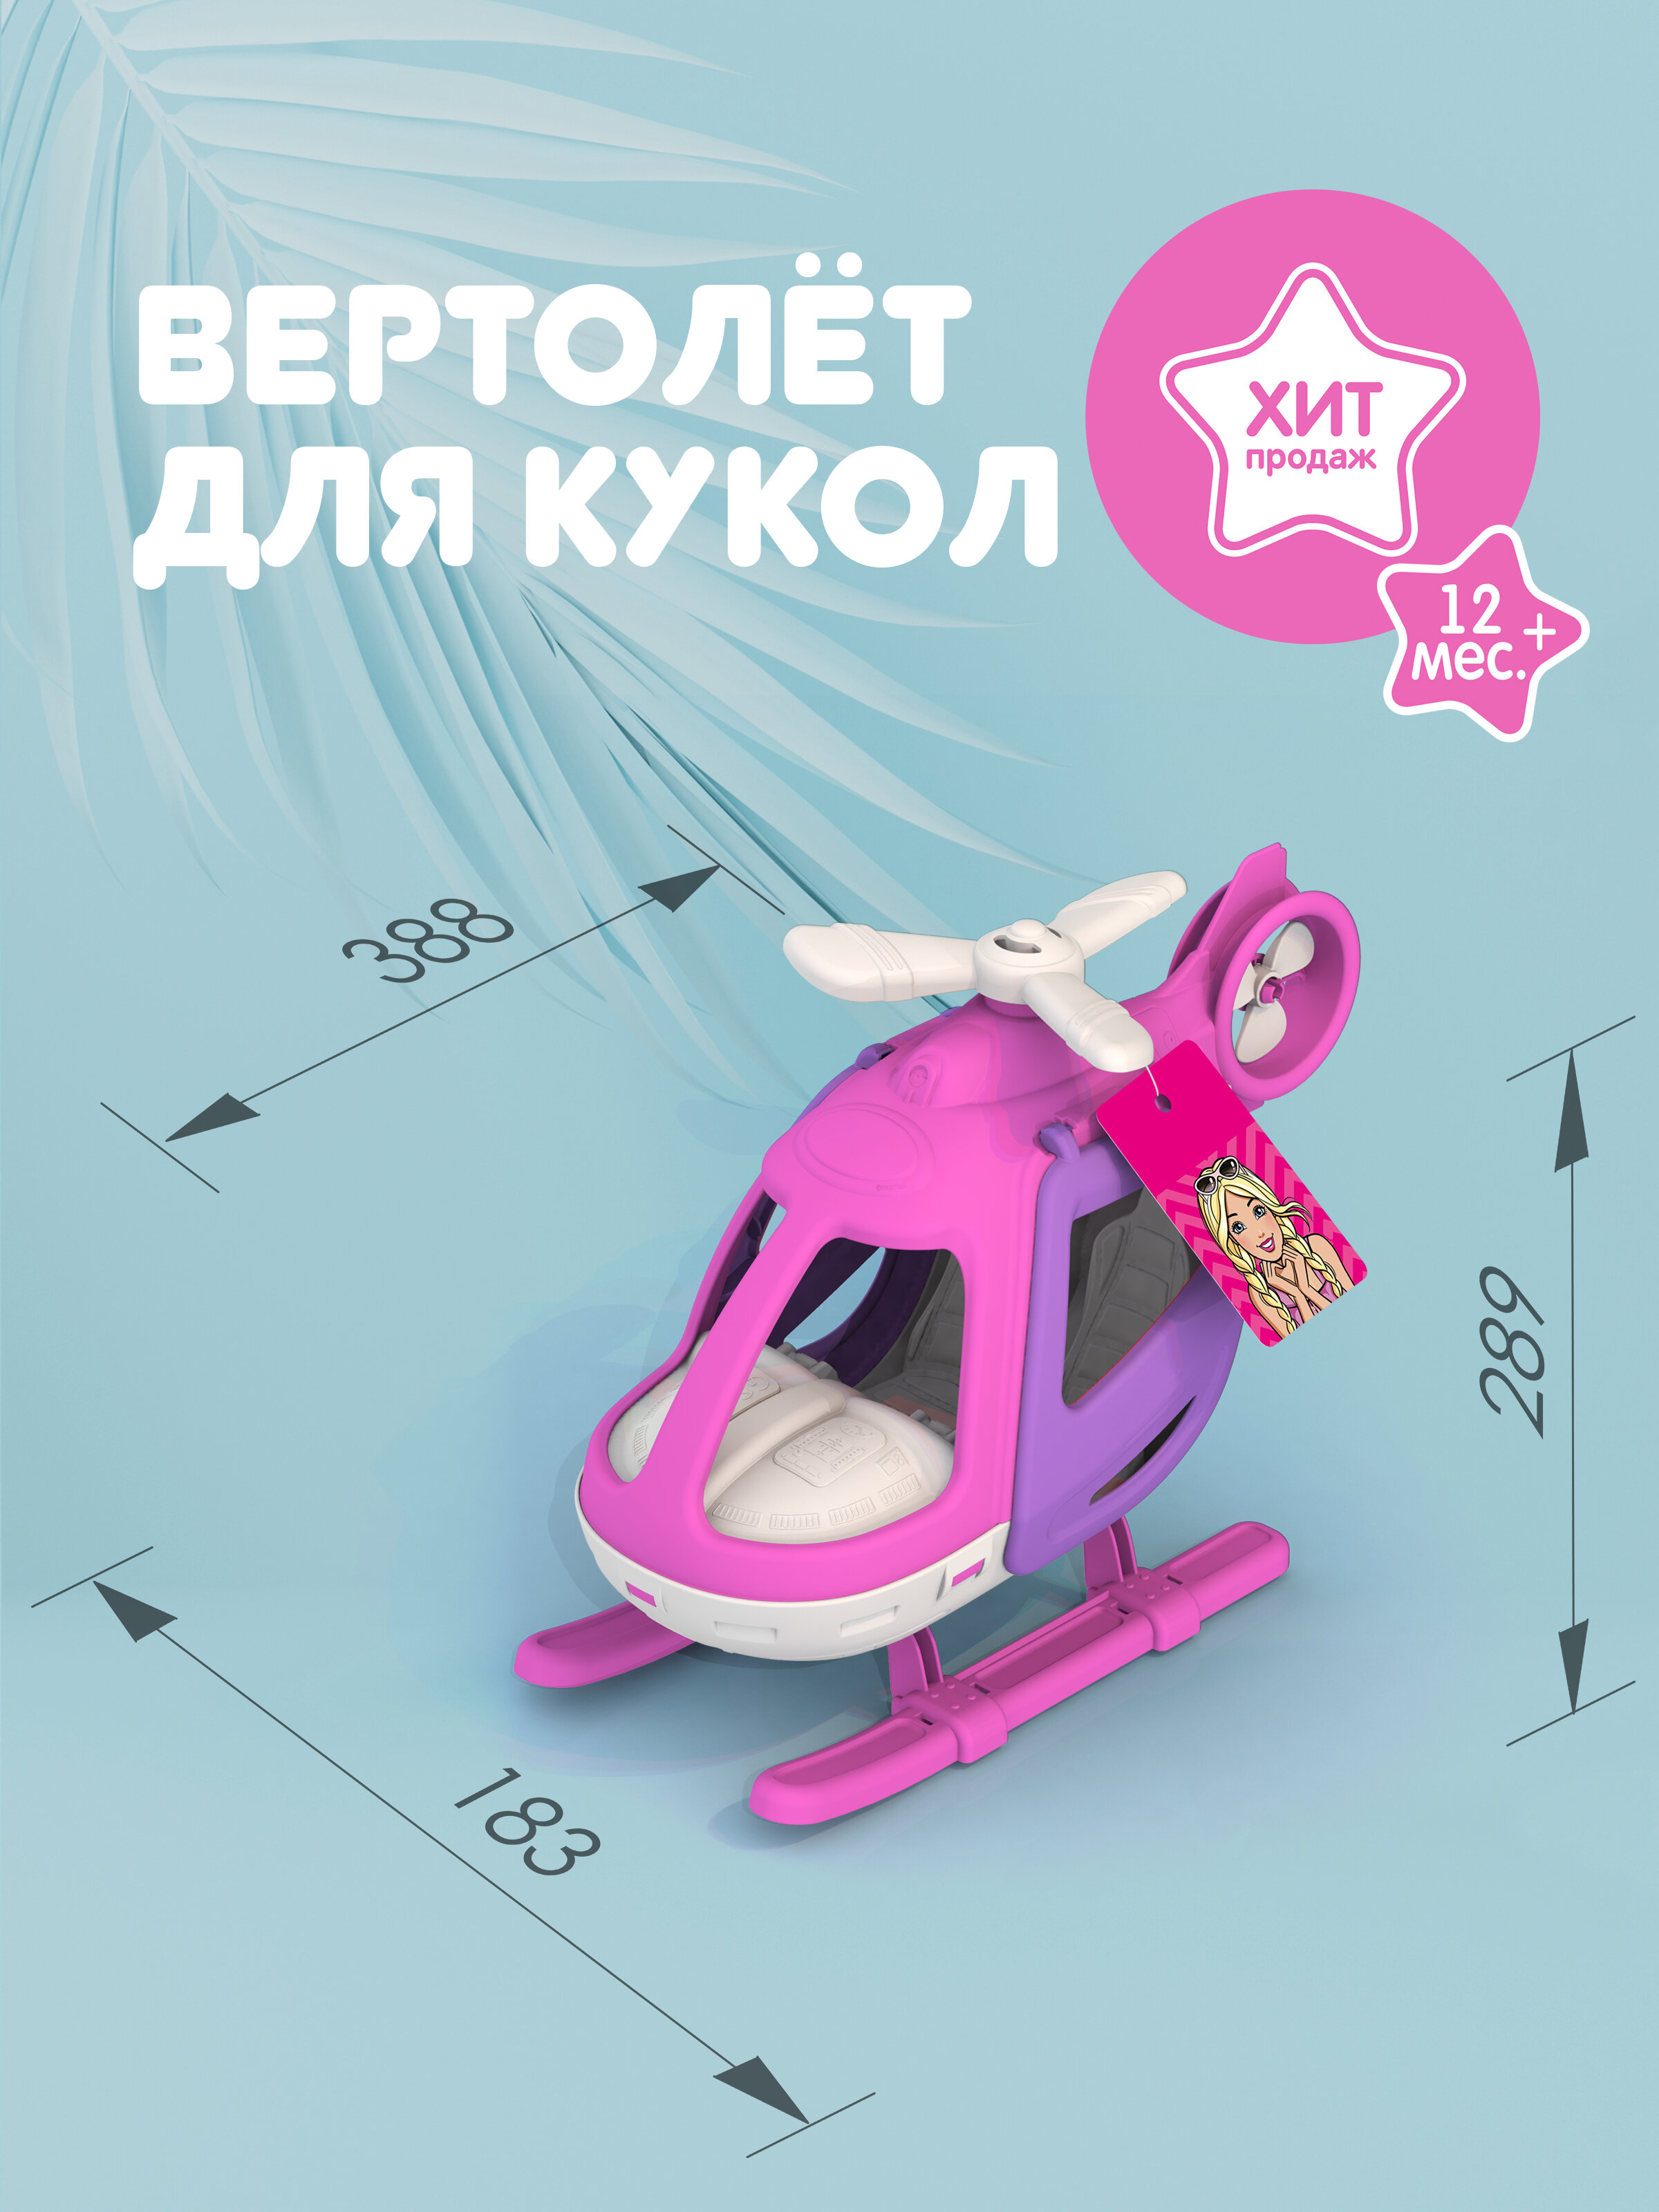 Вертолет для кукол, Нордпласт, кукольный транспорт, большой, розовый, для девочек